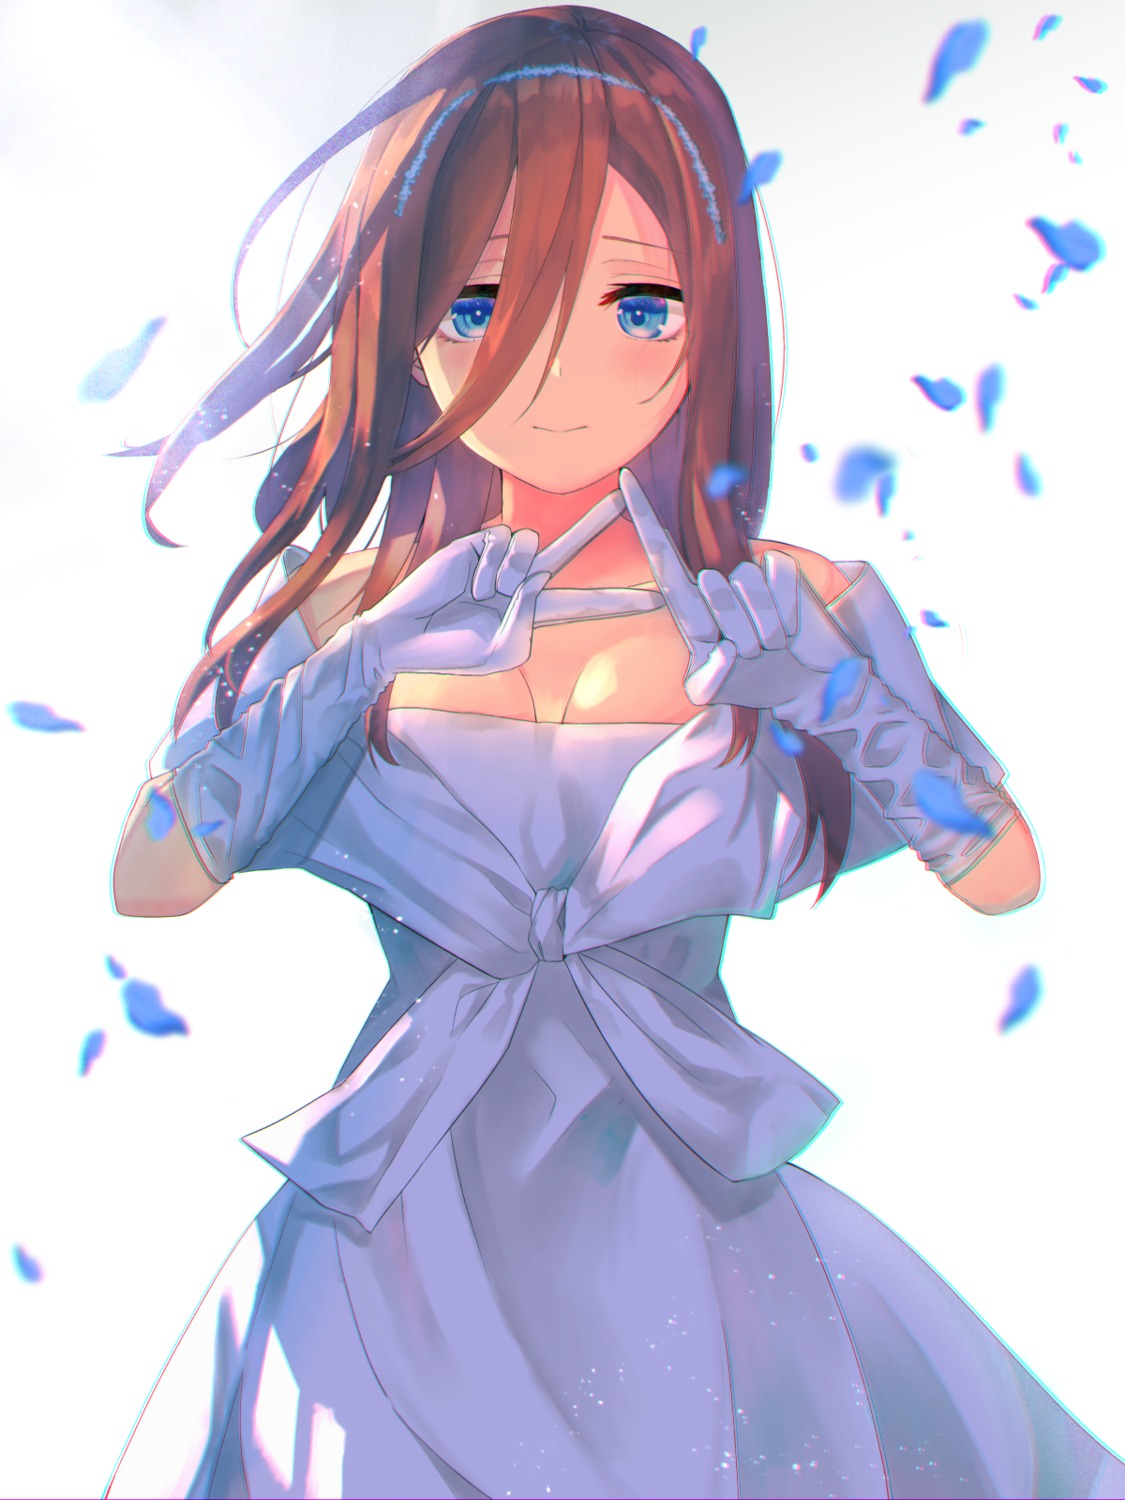 The Bride, 5Toubun no Hanayome Wiki